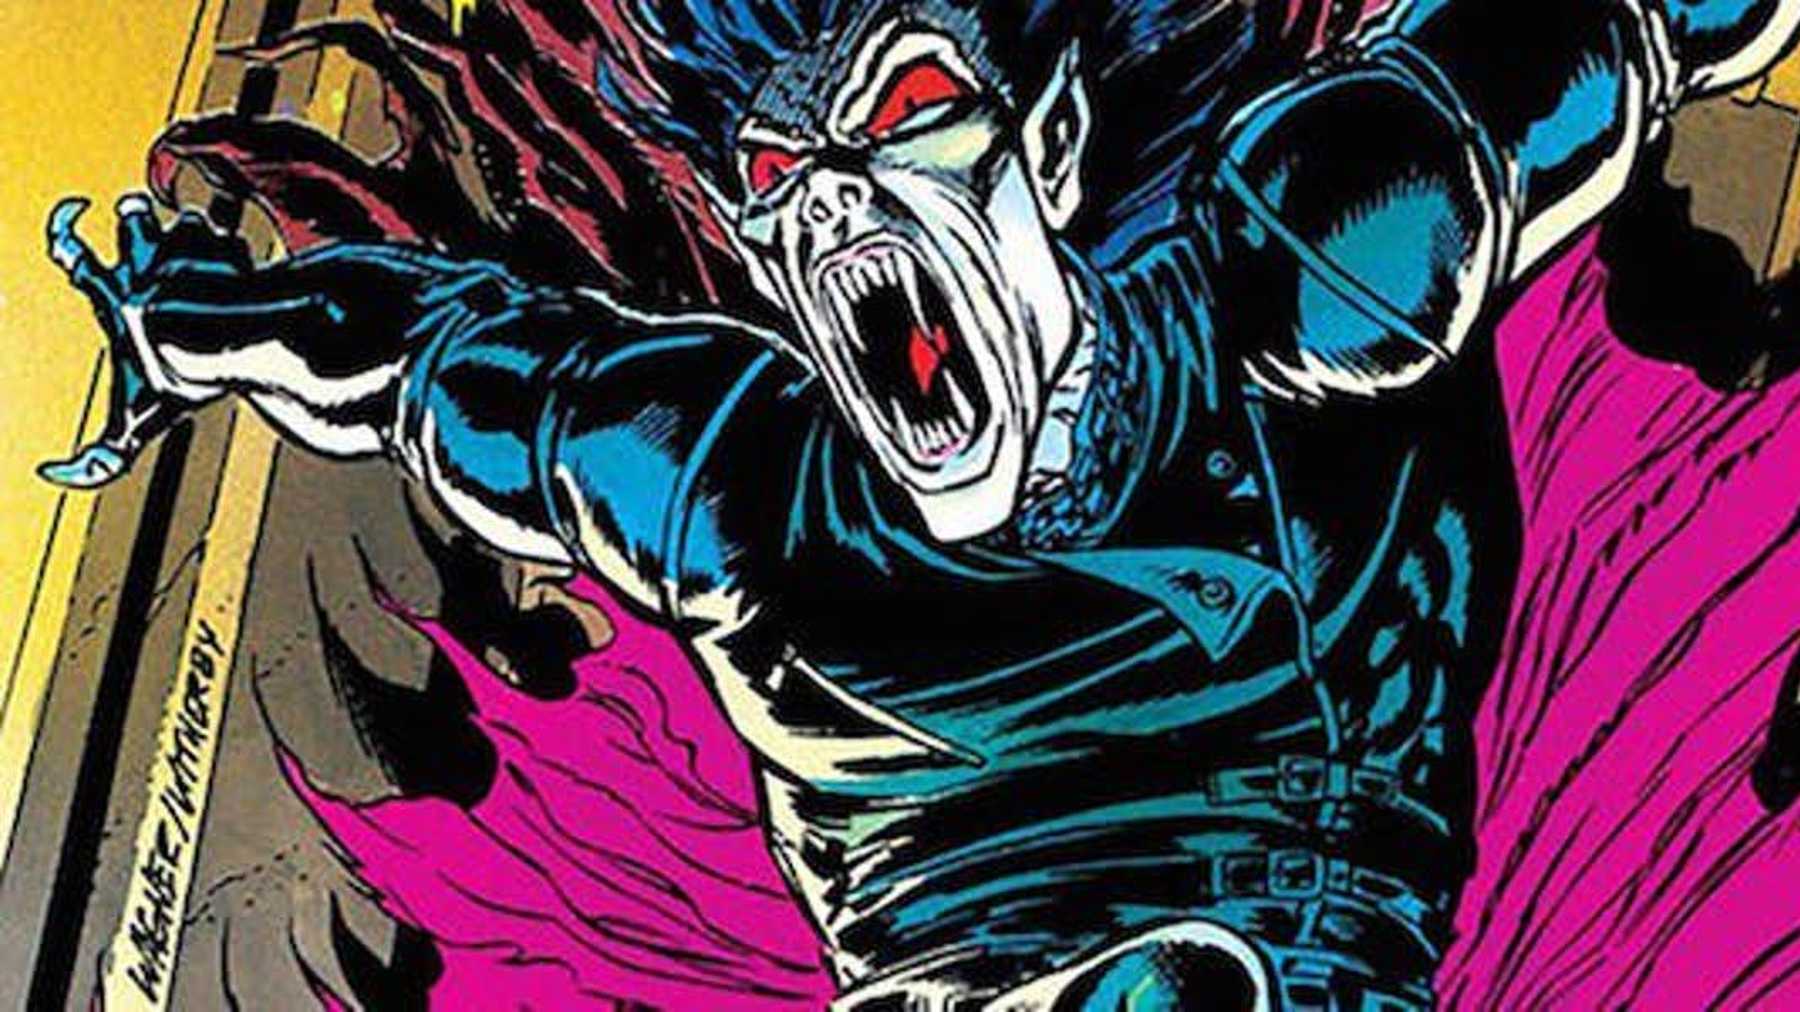 Morbius, czyli Doktor Jekyll i Mr Hyde świata Domu Pomysłów. Wewnętrzna walka dobra ze złem